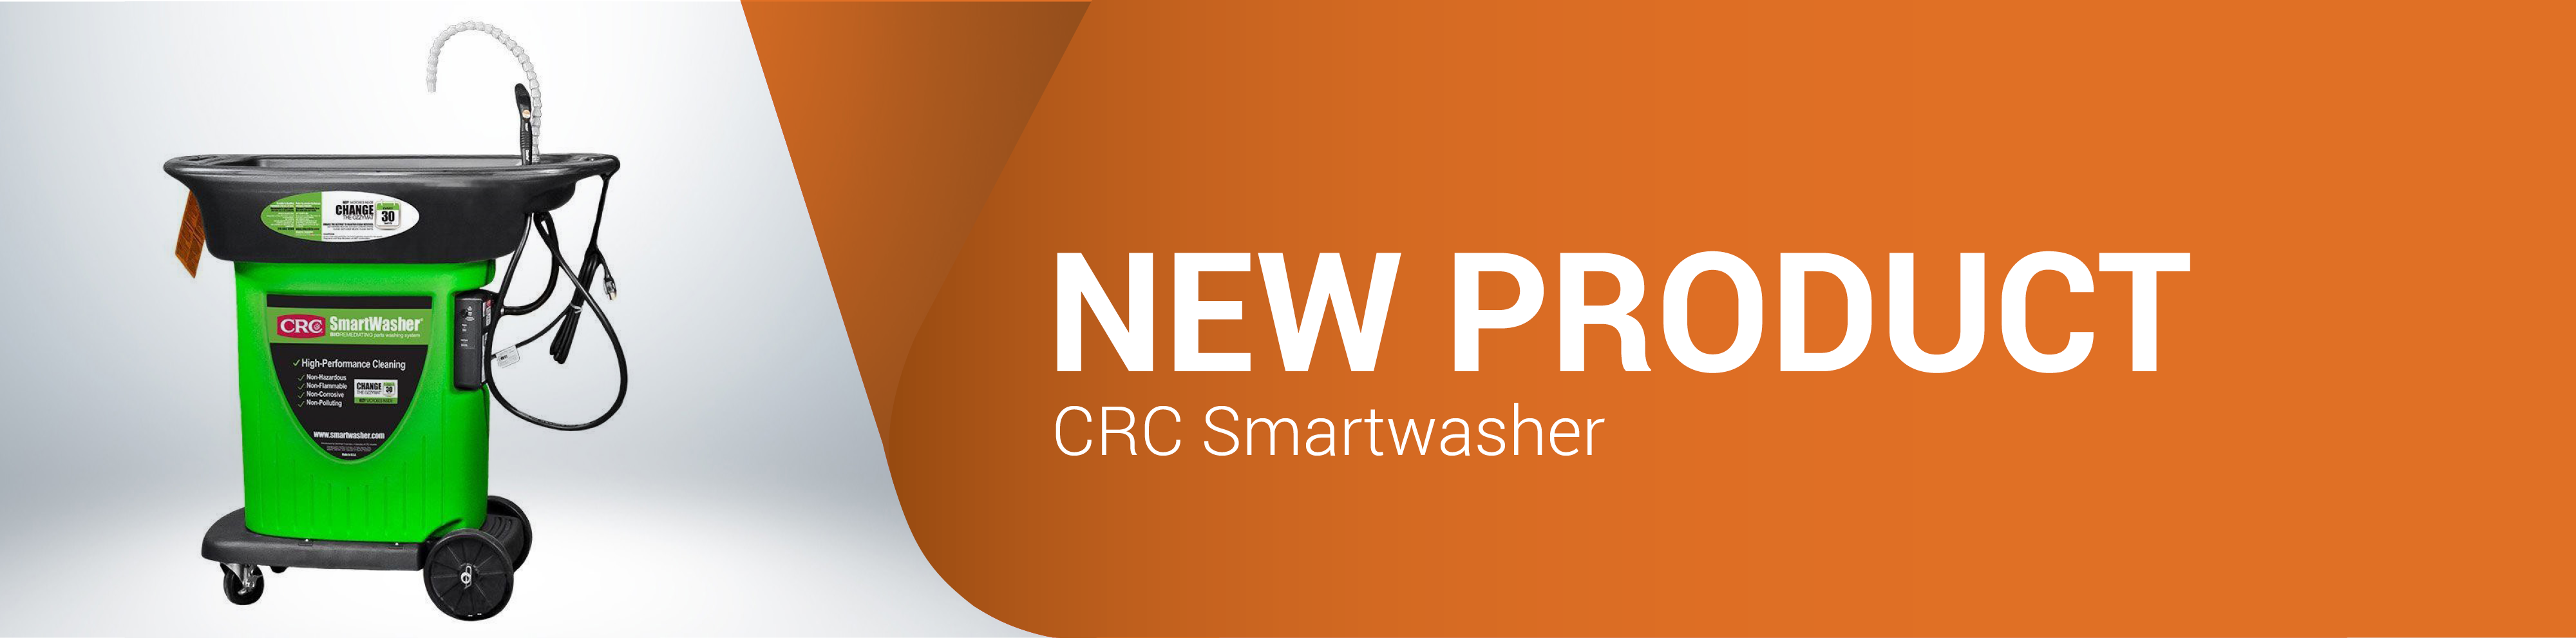 新建产品CRC智能刷新器